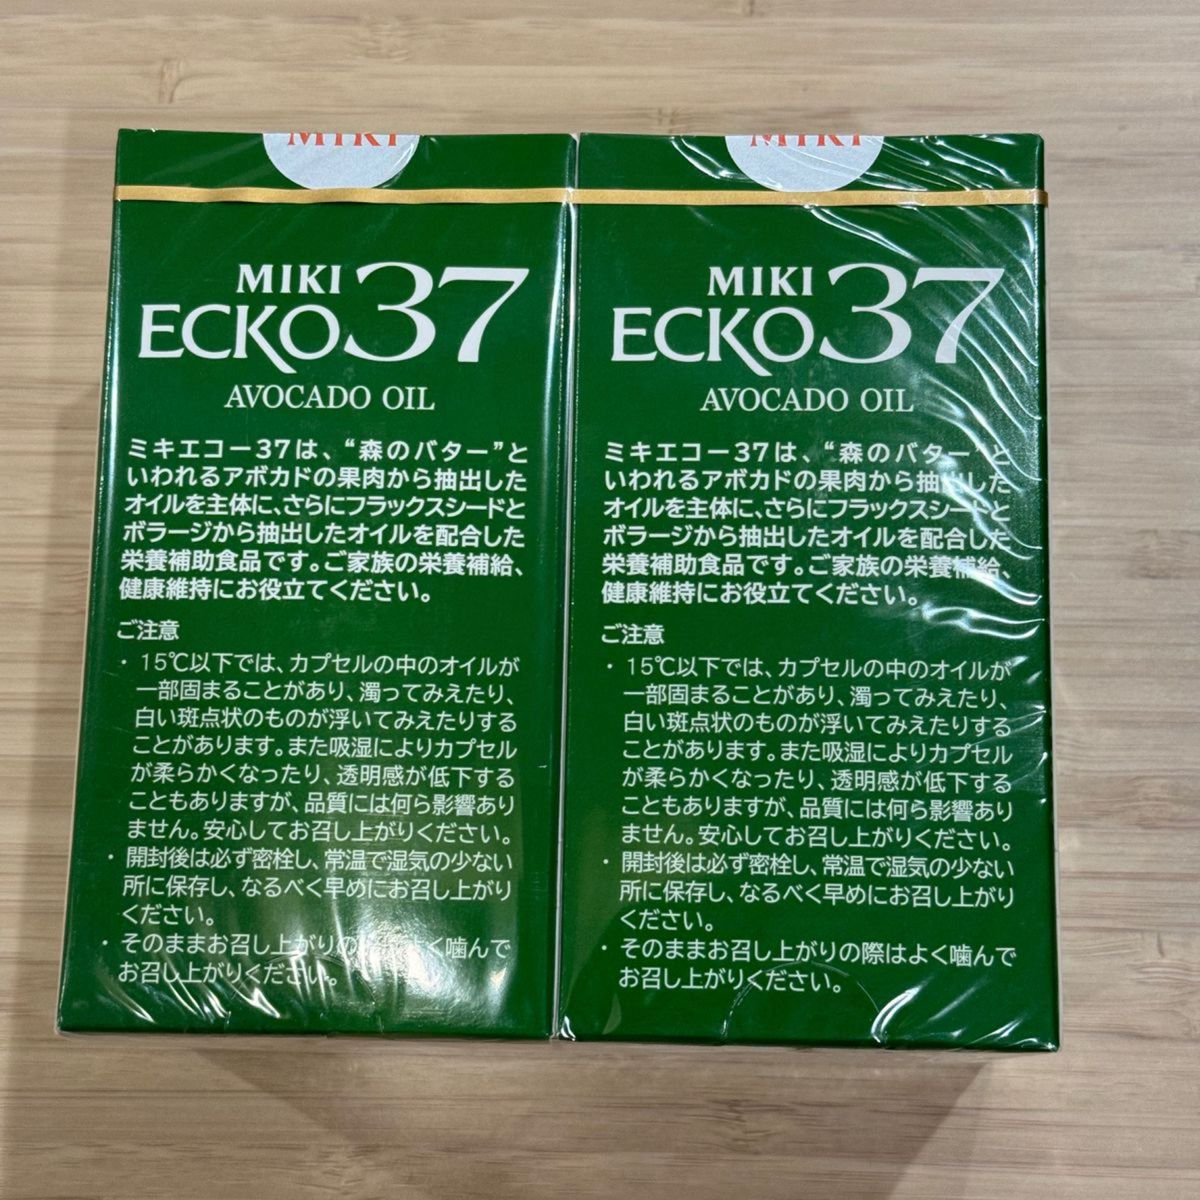 ミキプルーン MIKI ECKO37 ミキエコー37 100粒 2箱入り (計200粒) 